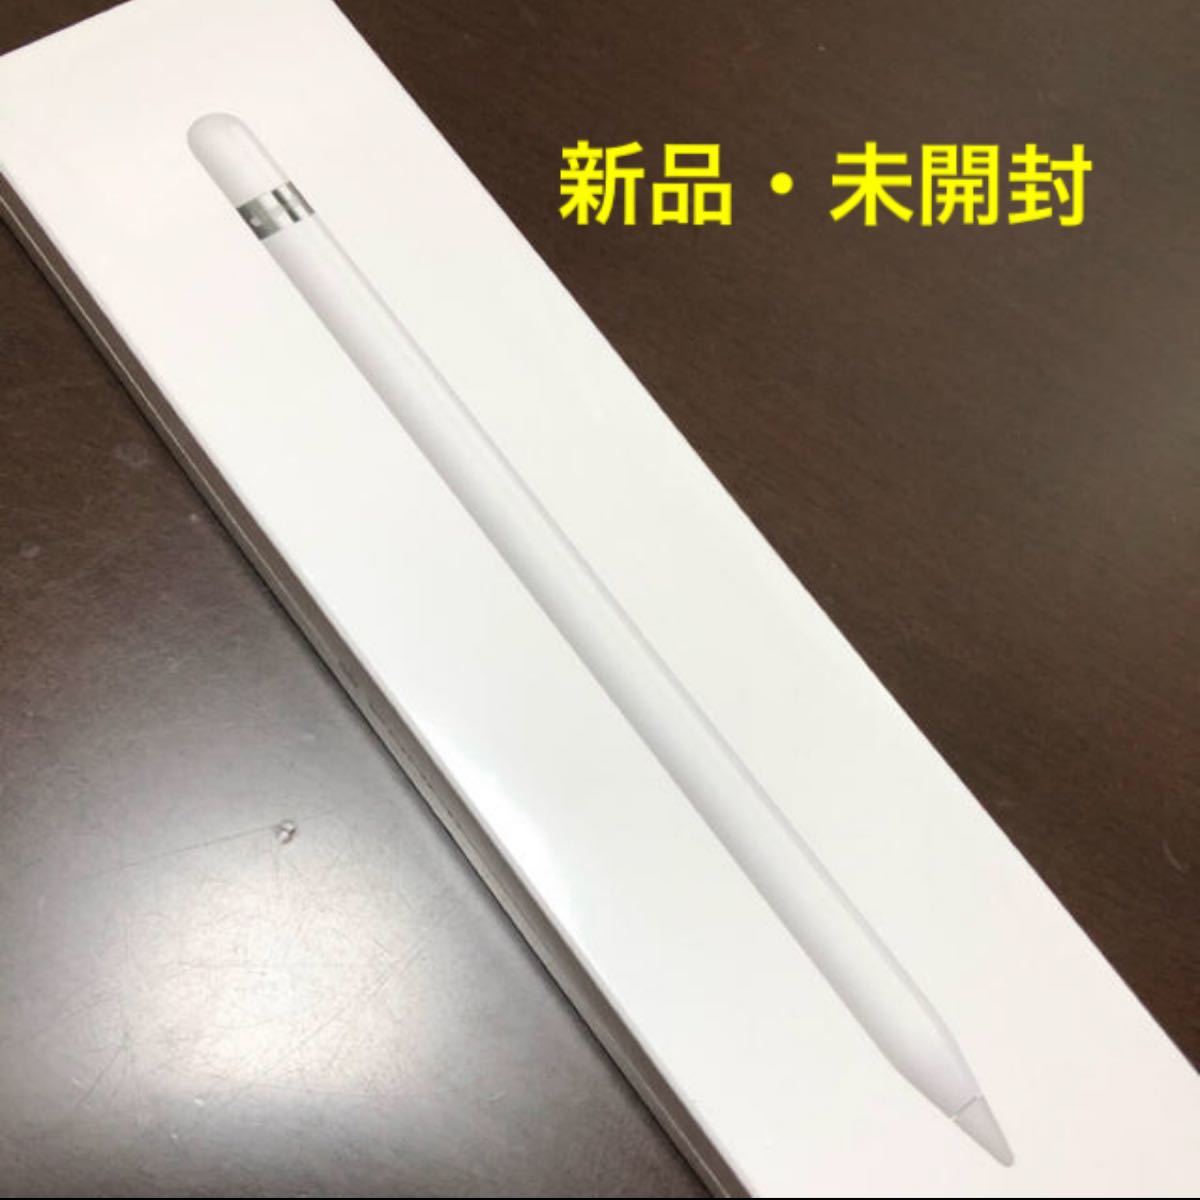 新品未開封品 apple pencil アップルペンシル 第一世代 - rehda.com